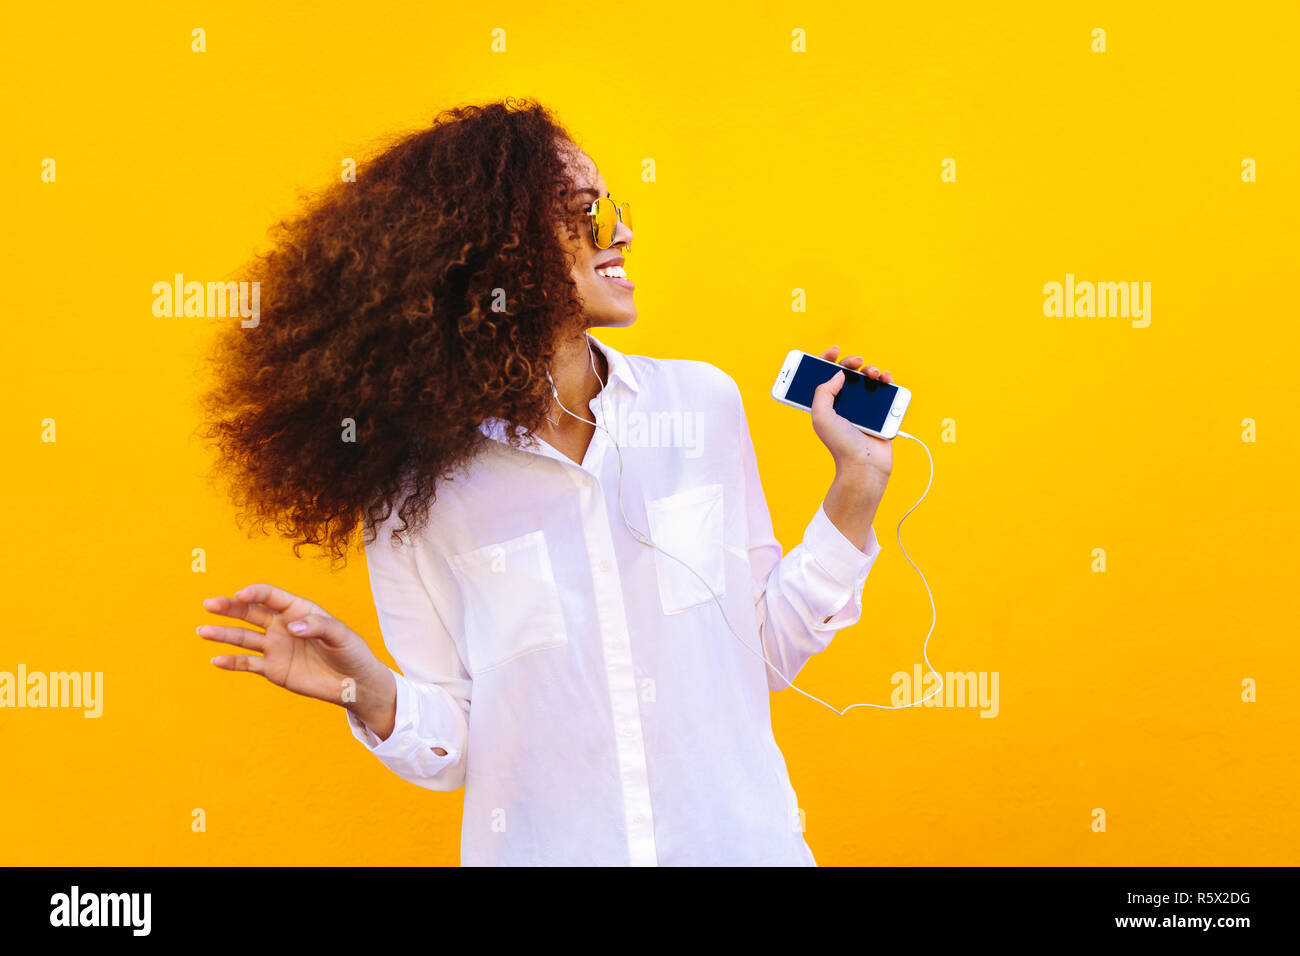 Donna con capelli ricci che indossa una camicia bianca ascoltando la musica dal suo telefono cellulare. Ragazza africana utilizzando auricolari per ascoltare musica contro la parete gialla. Foto Stock